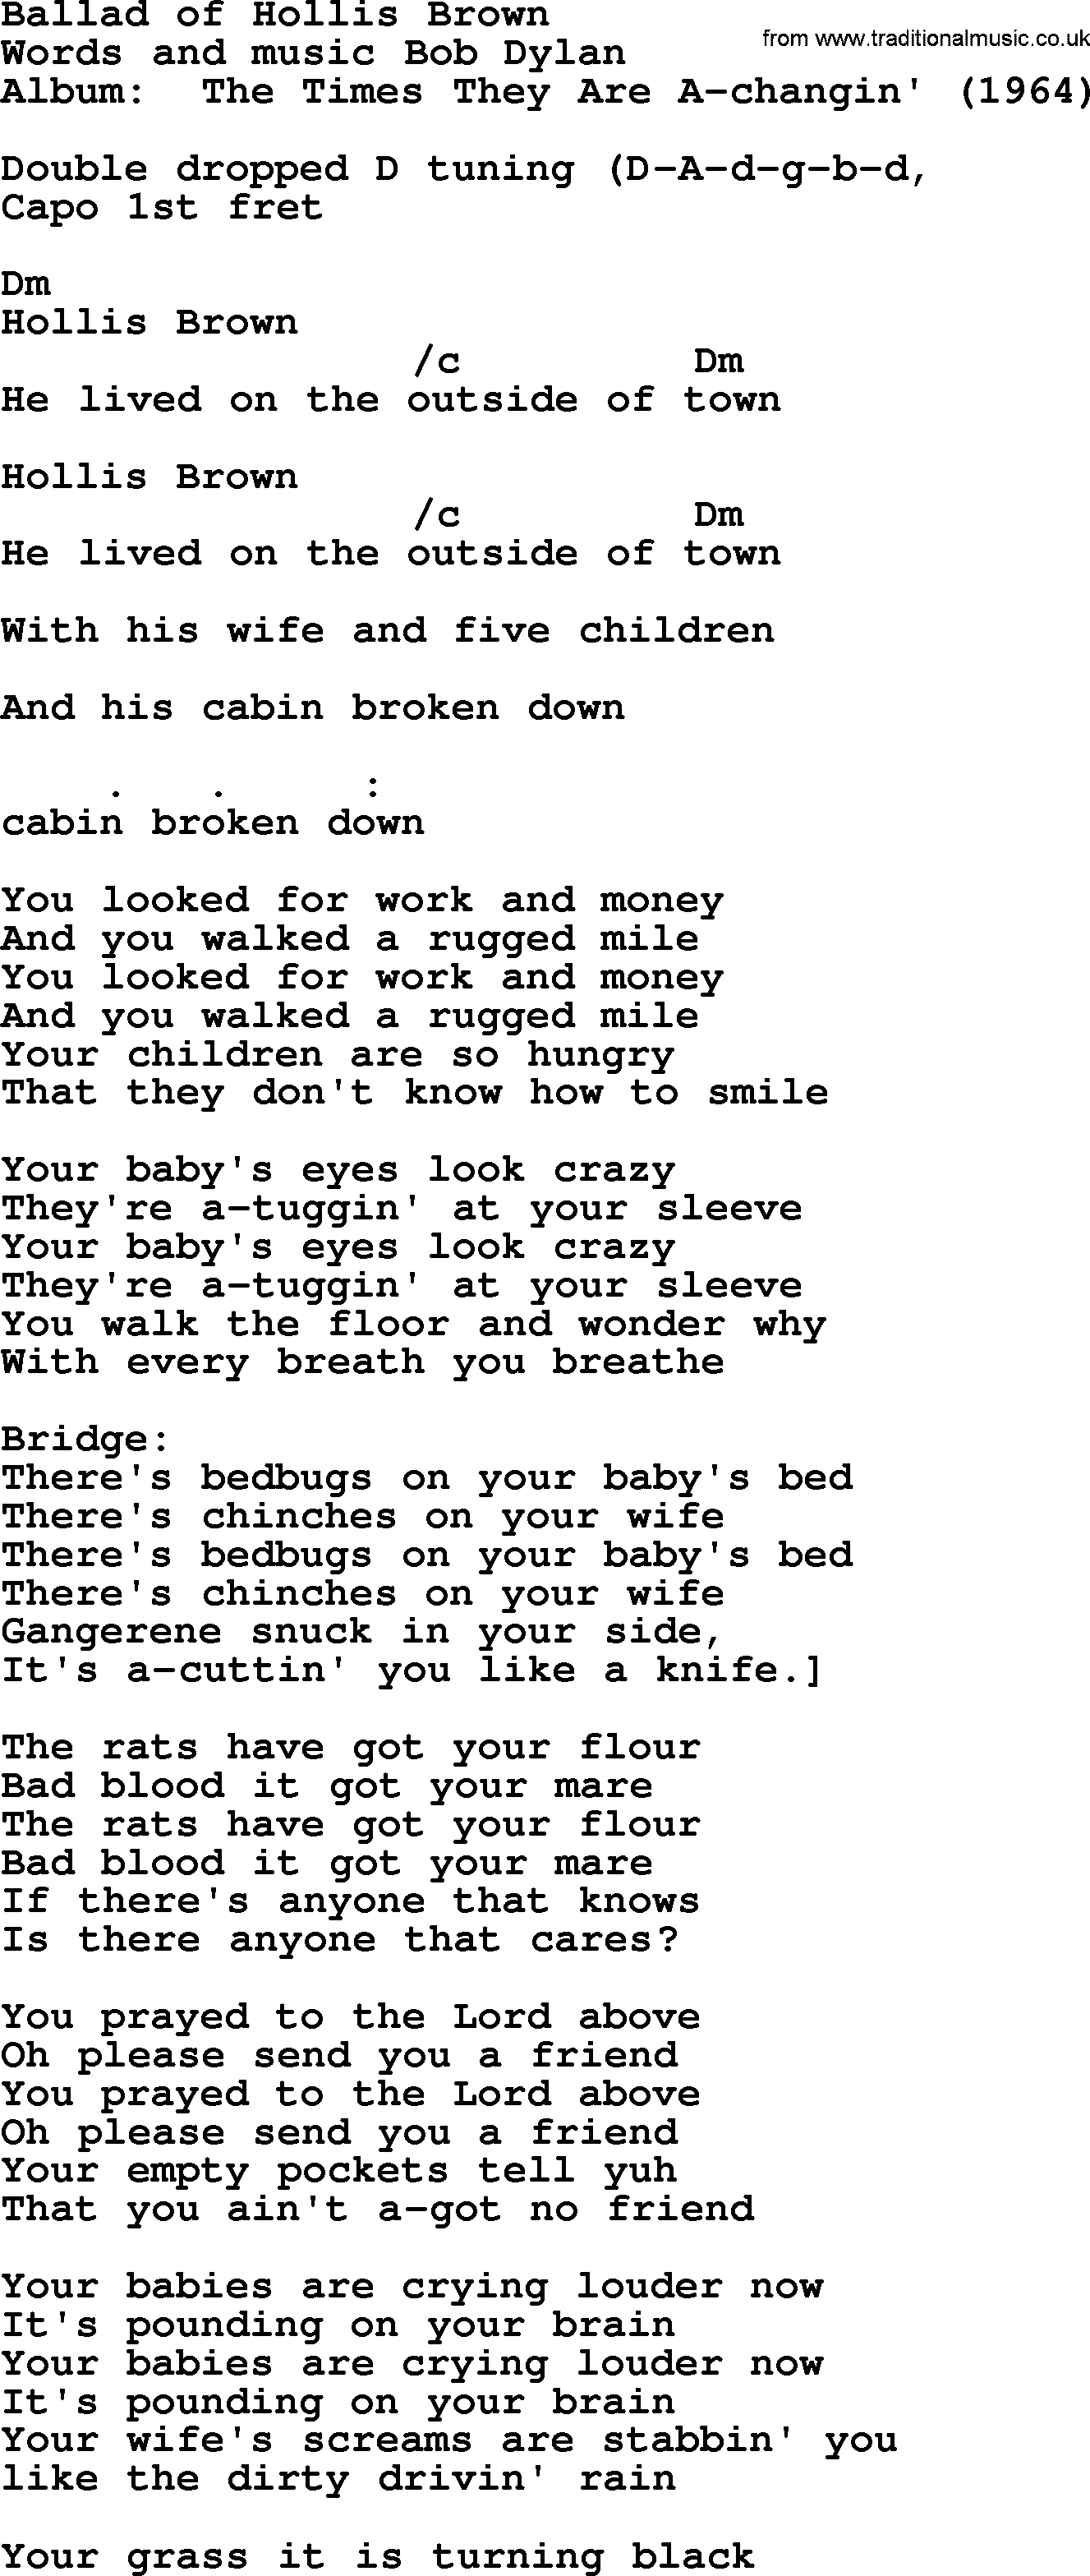 Bob Dylan song, lyrics with chords - Ballad of Hollis Brown